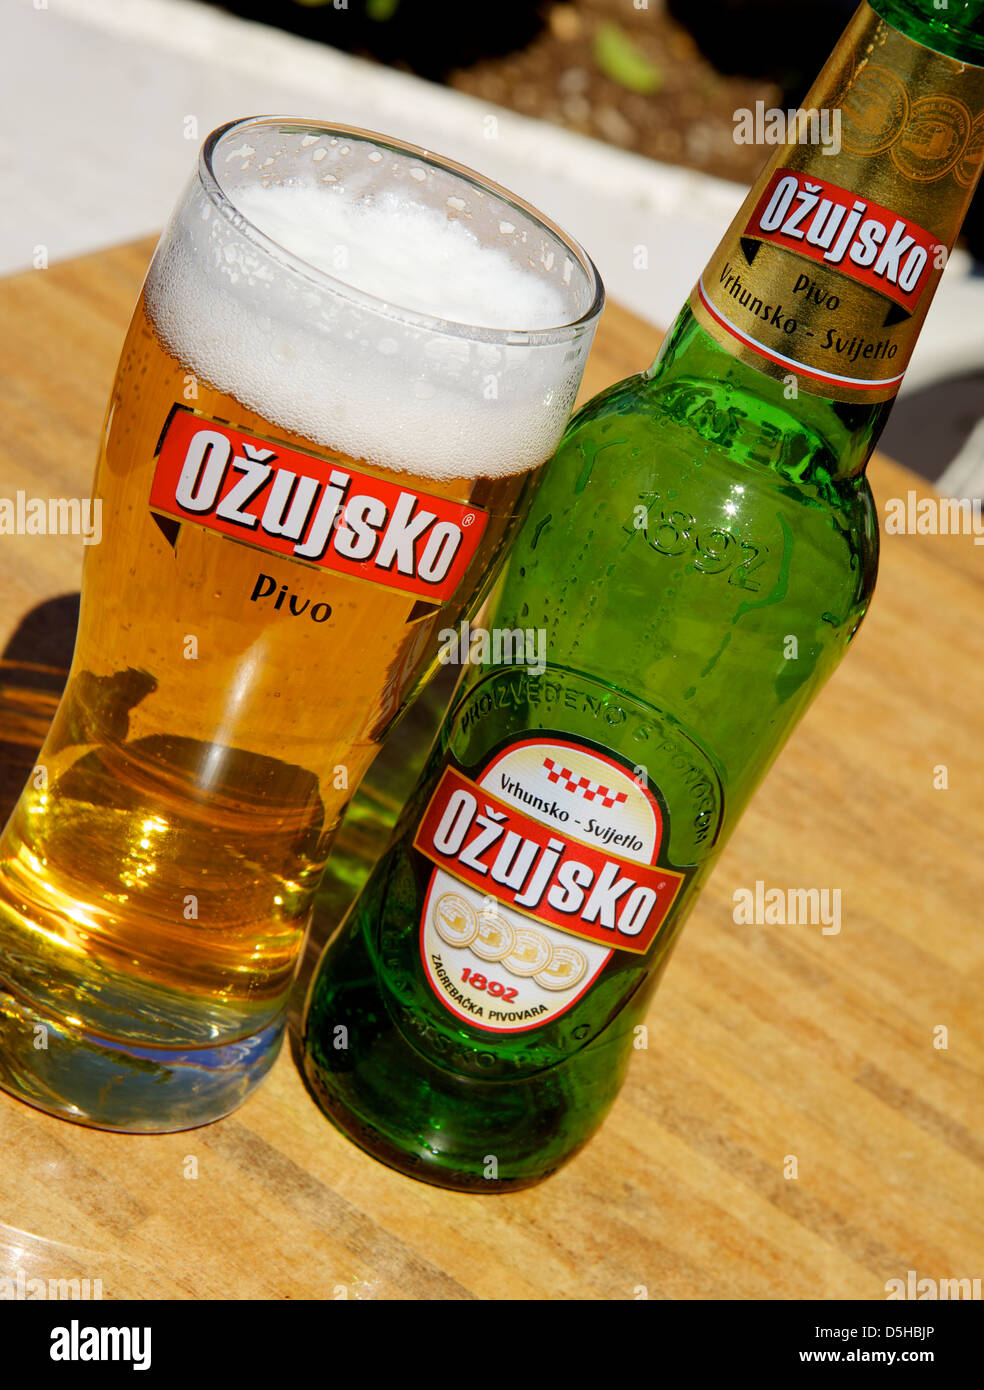 Ozujsko (bière Povo) bière croate, Croatie, Europe Banque D'Images